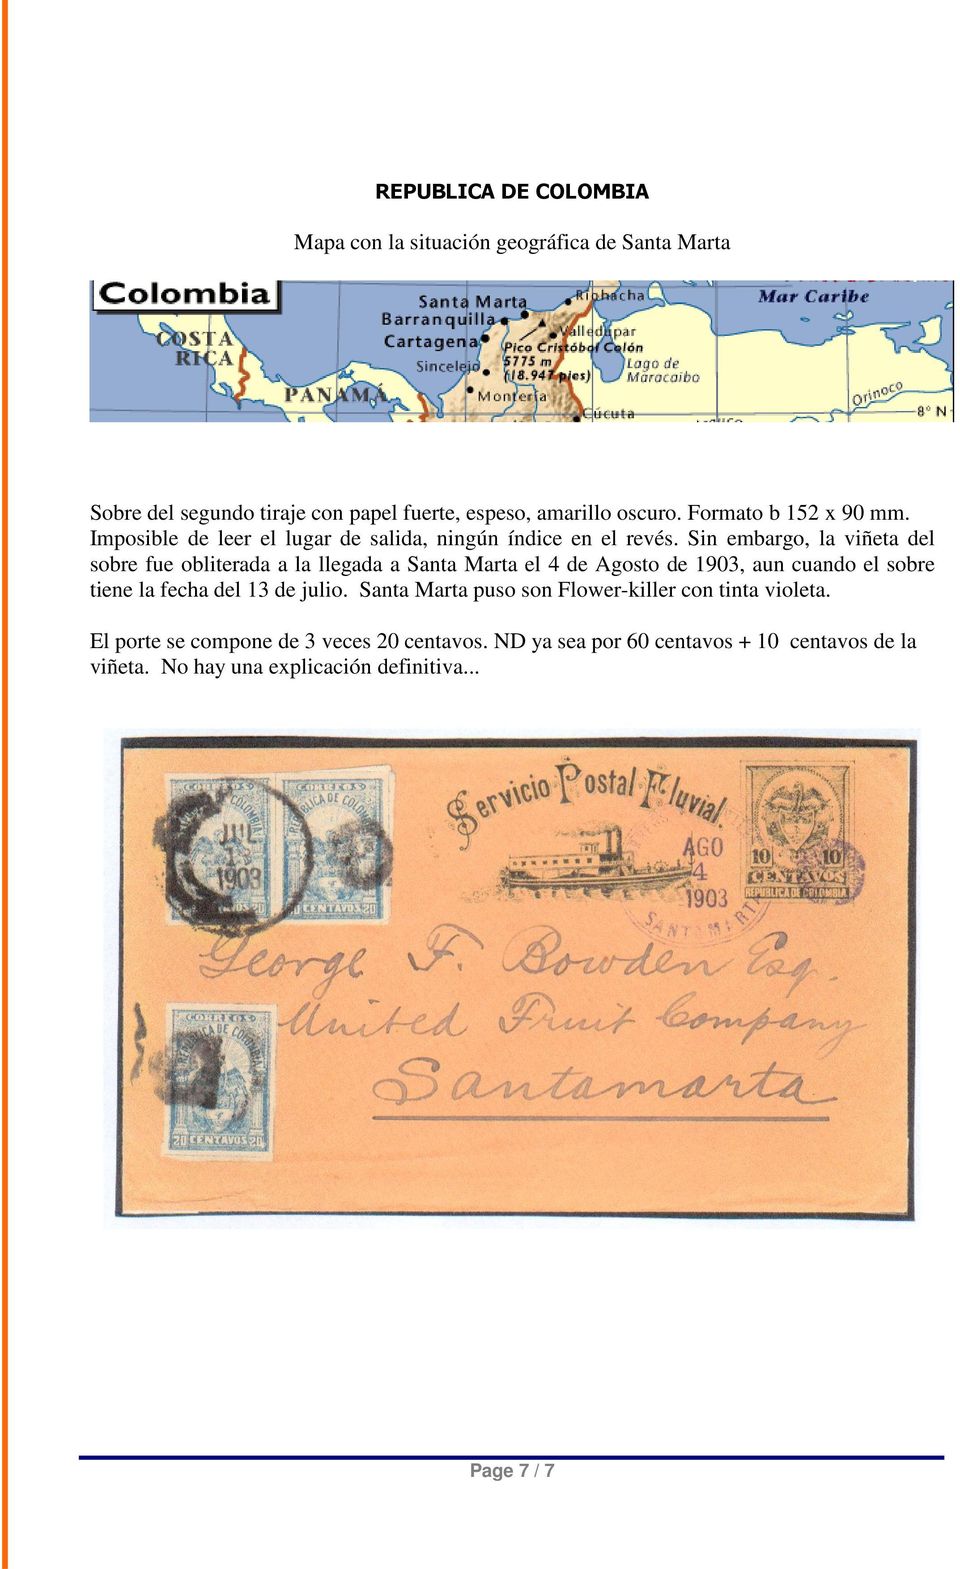 Sin embargo, la viñeta del sobre fue obliterada a la llegada a Santa Marta el 4 de Agosto de 1903, aun cuando el sobre tiene la fecha del 13 de